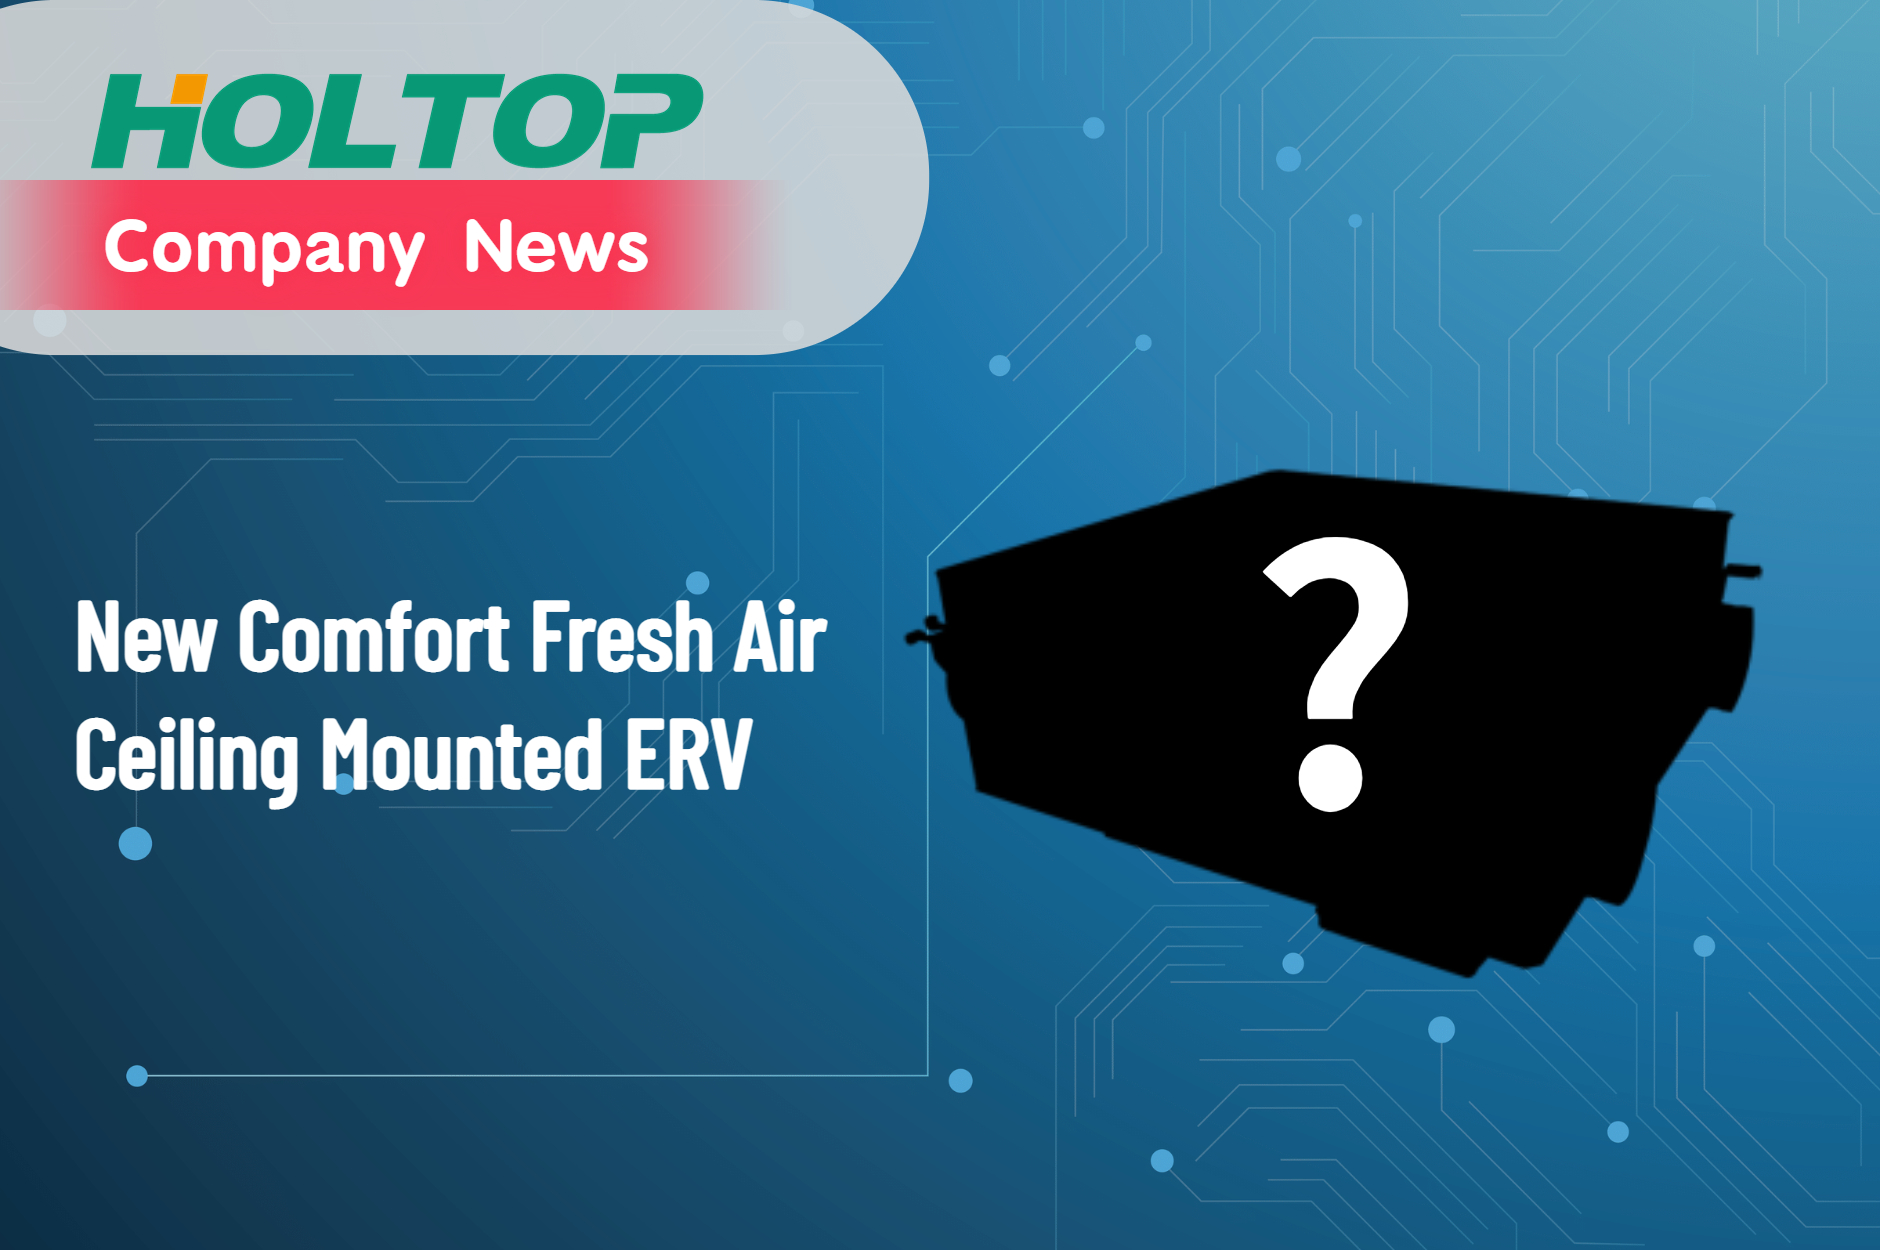 Annuncio di un nuovo prodotto - Holtop Comfort Series ERV montato a soffitto